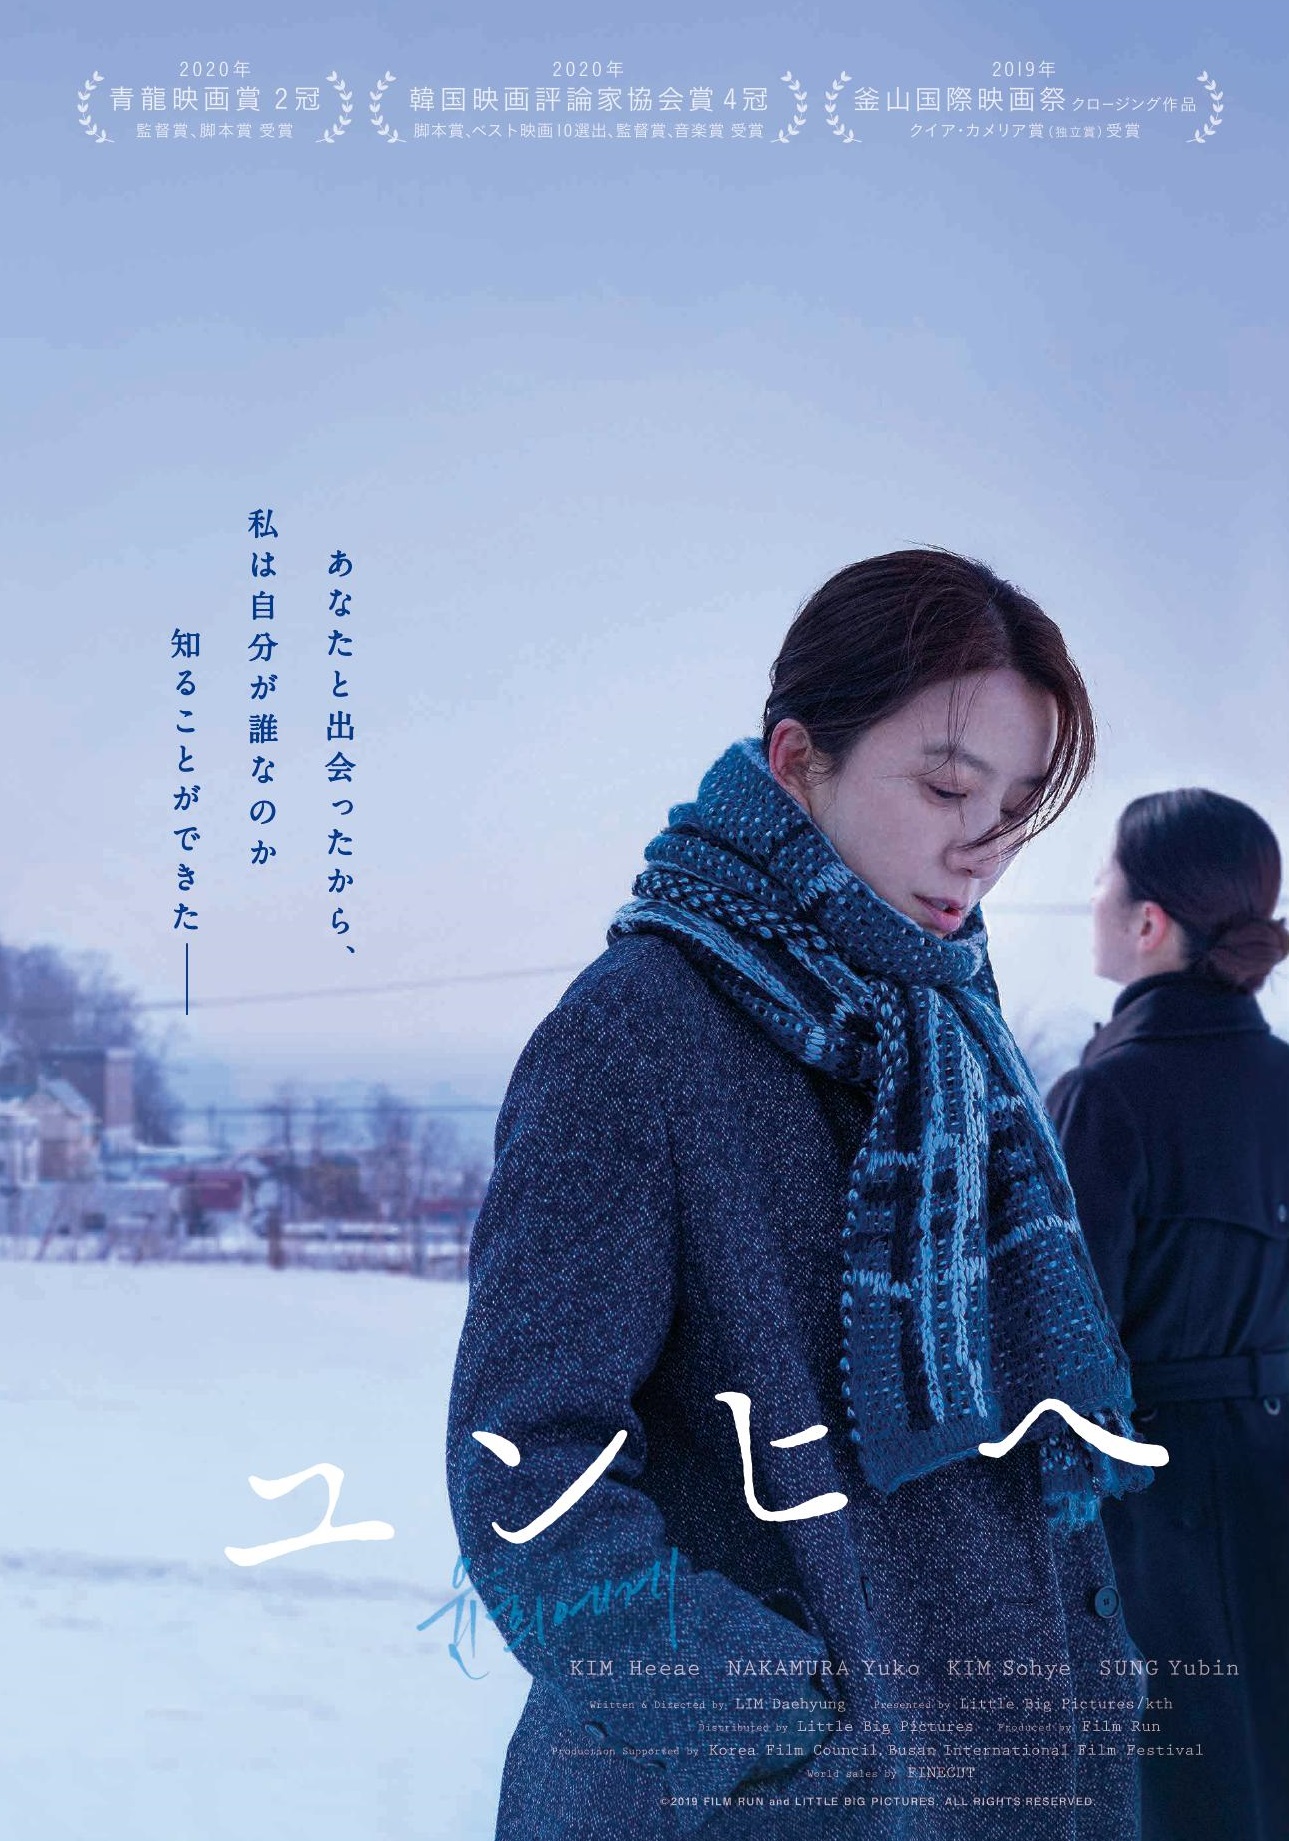 映画『ユンヒヘ』20年の時を越えて紡がれる、一人の韓国人女性の心の旅路